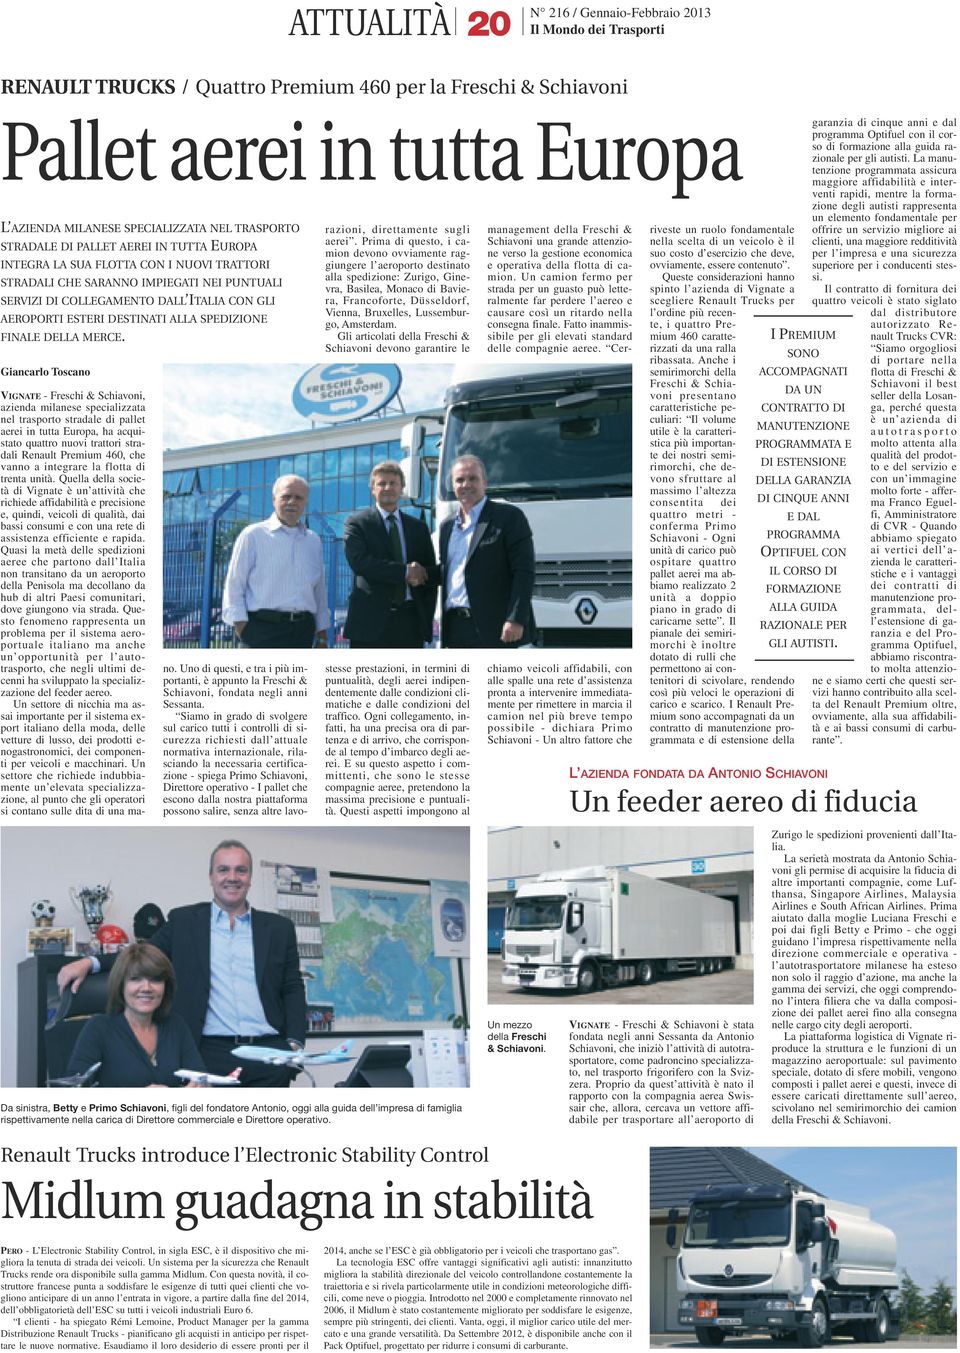 Giancarlo Toscano VIGNATE - Freschi & Schiavoni, azienda milanese specializzata nel trasporto stradale di pal let aerei in tutta Europa, ha acquistato quattro nuovi trattori stradali Renault Premium